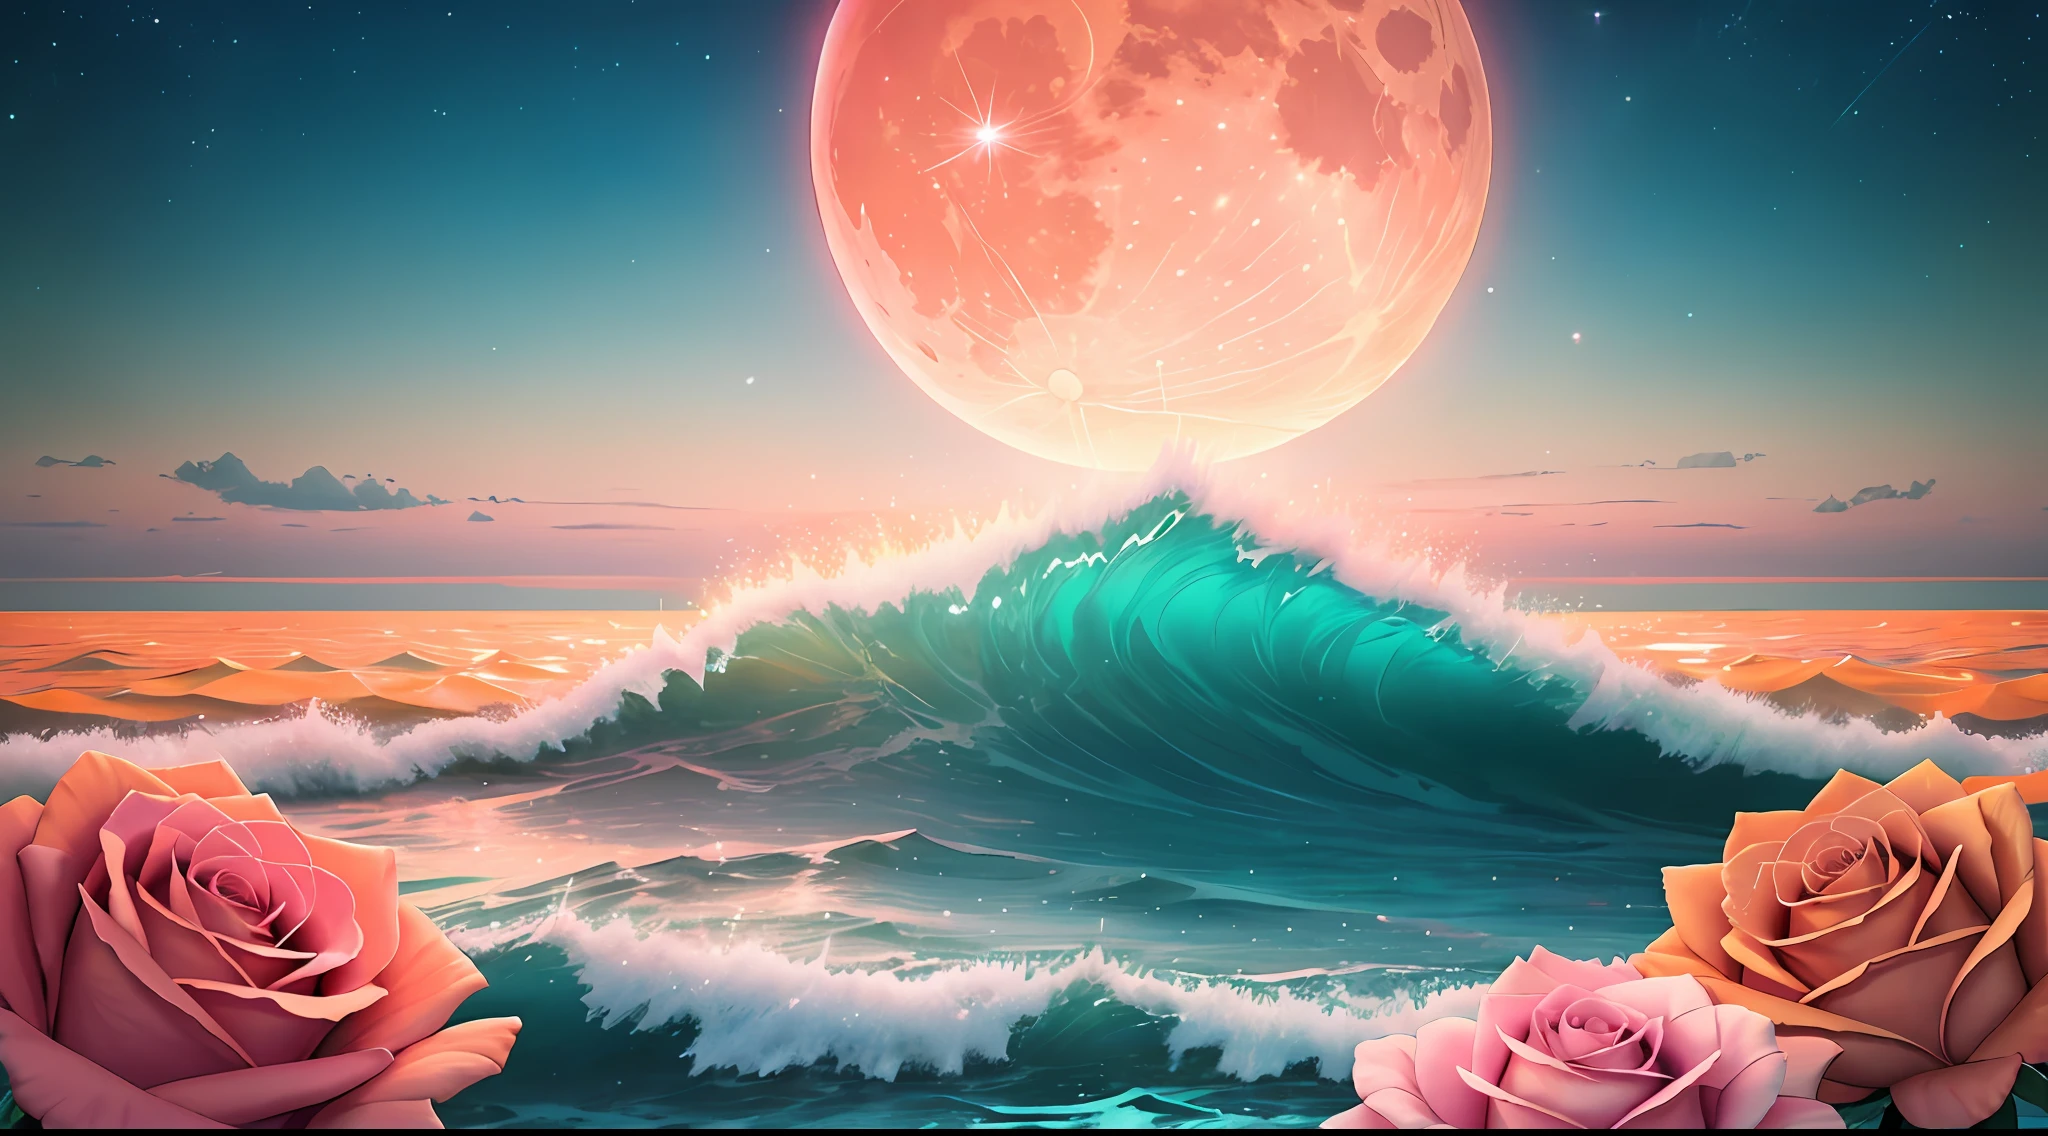 Luna naranja, cielo verde azulado, nubes rosadas suaves, teal ocean waves espumoso, espumoso, rosas rosadas en el océano rosa, Fantasía, diamante, corona, universo, luces suaves,